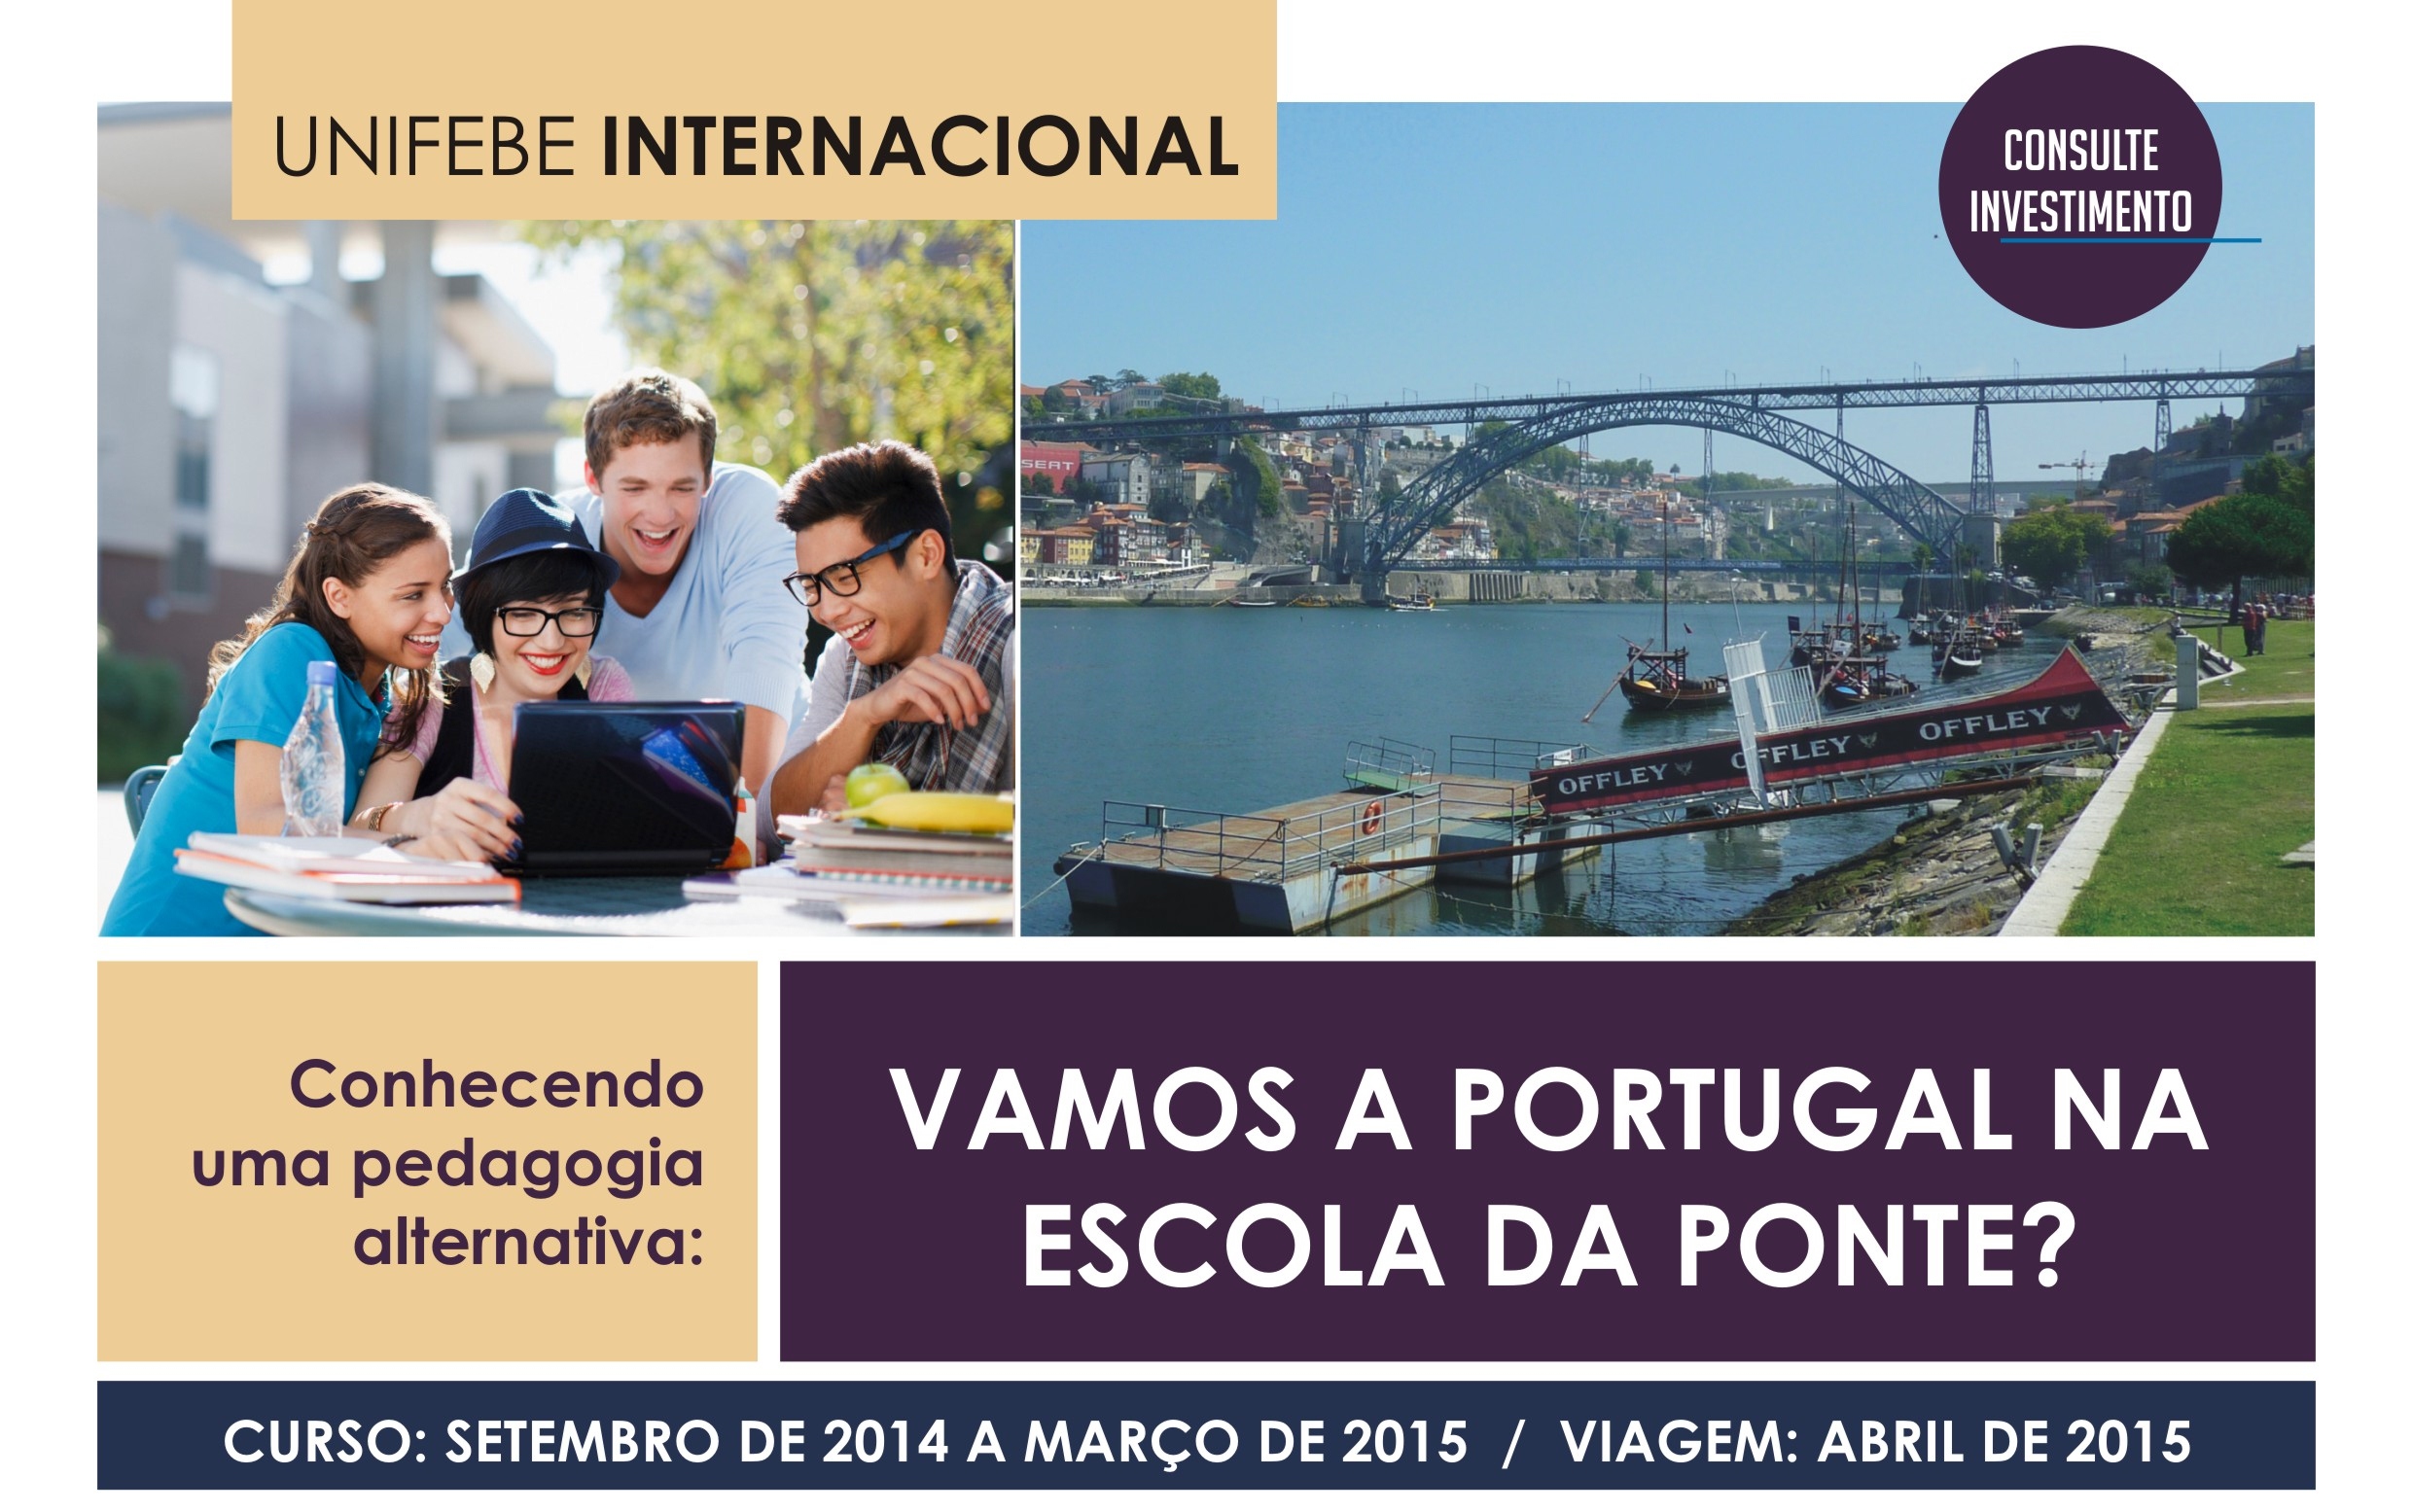 Inscrições prorrogadas para viagem de estudos internacional para Escola da Ponte